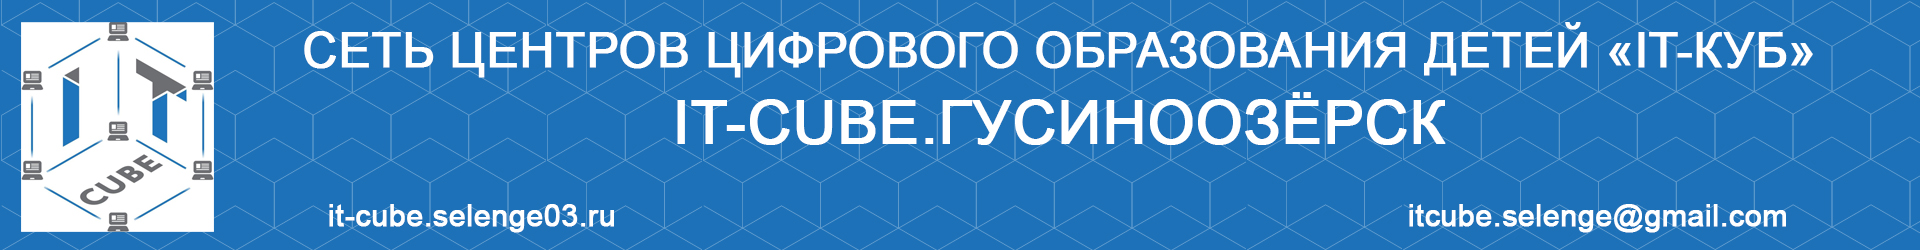 ЦЦОД «IT-cube.Гусиноозерск» является площадкой для проведения Всероссийского технологического диктанта!